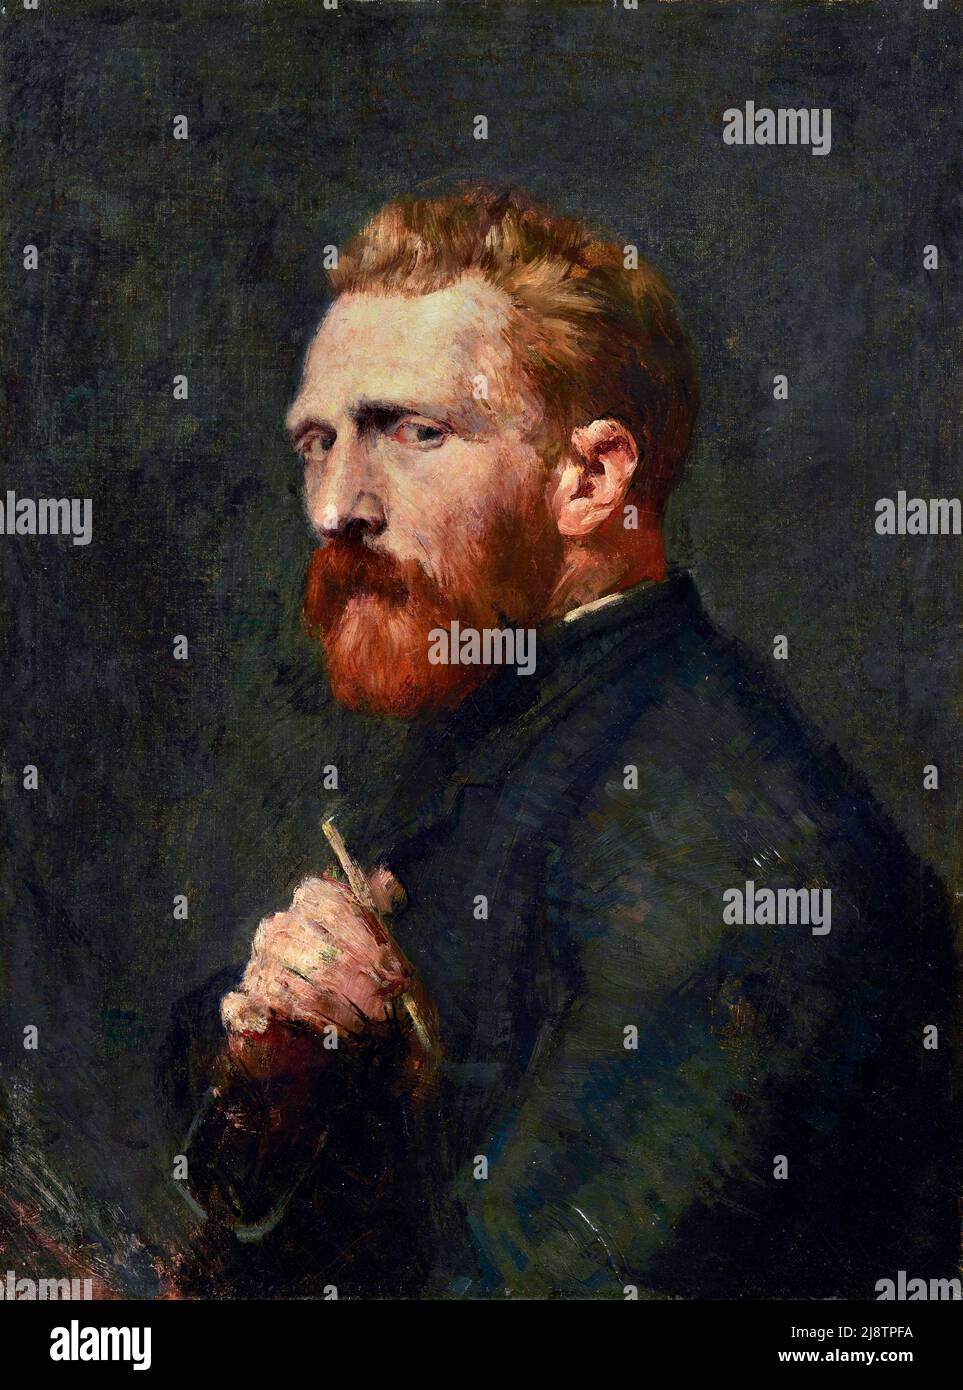 Porträt von Vincent Van Gogh durch den australischen impressionistischen Maler John Russell (1858-1930), Öl auf Leinwand, 1886 Stockfoto